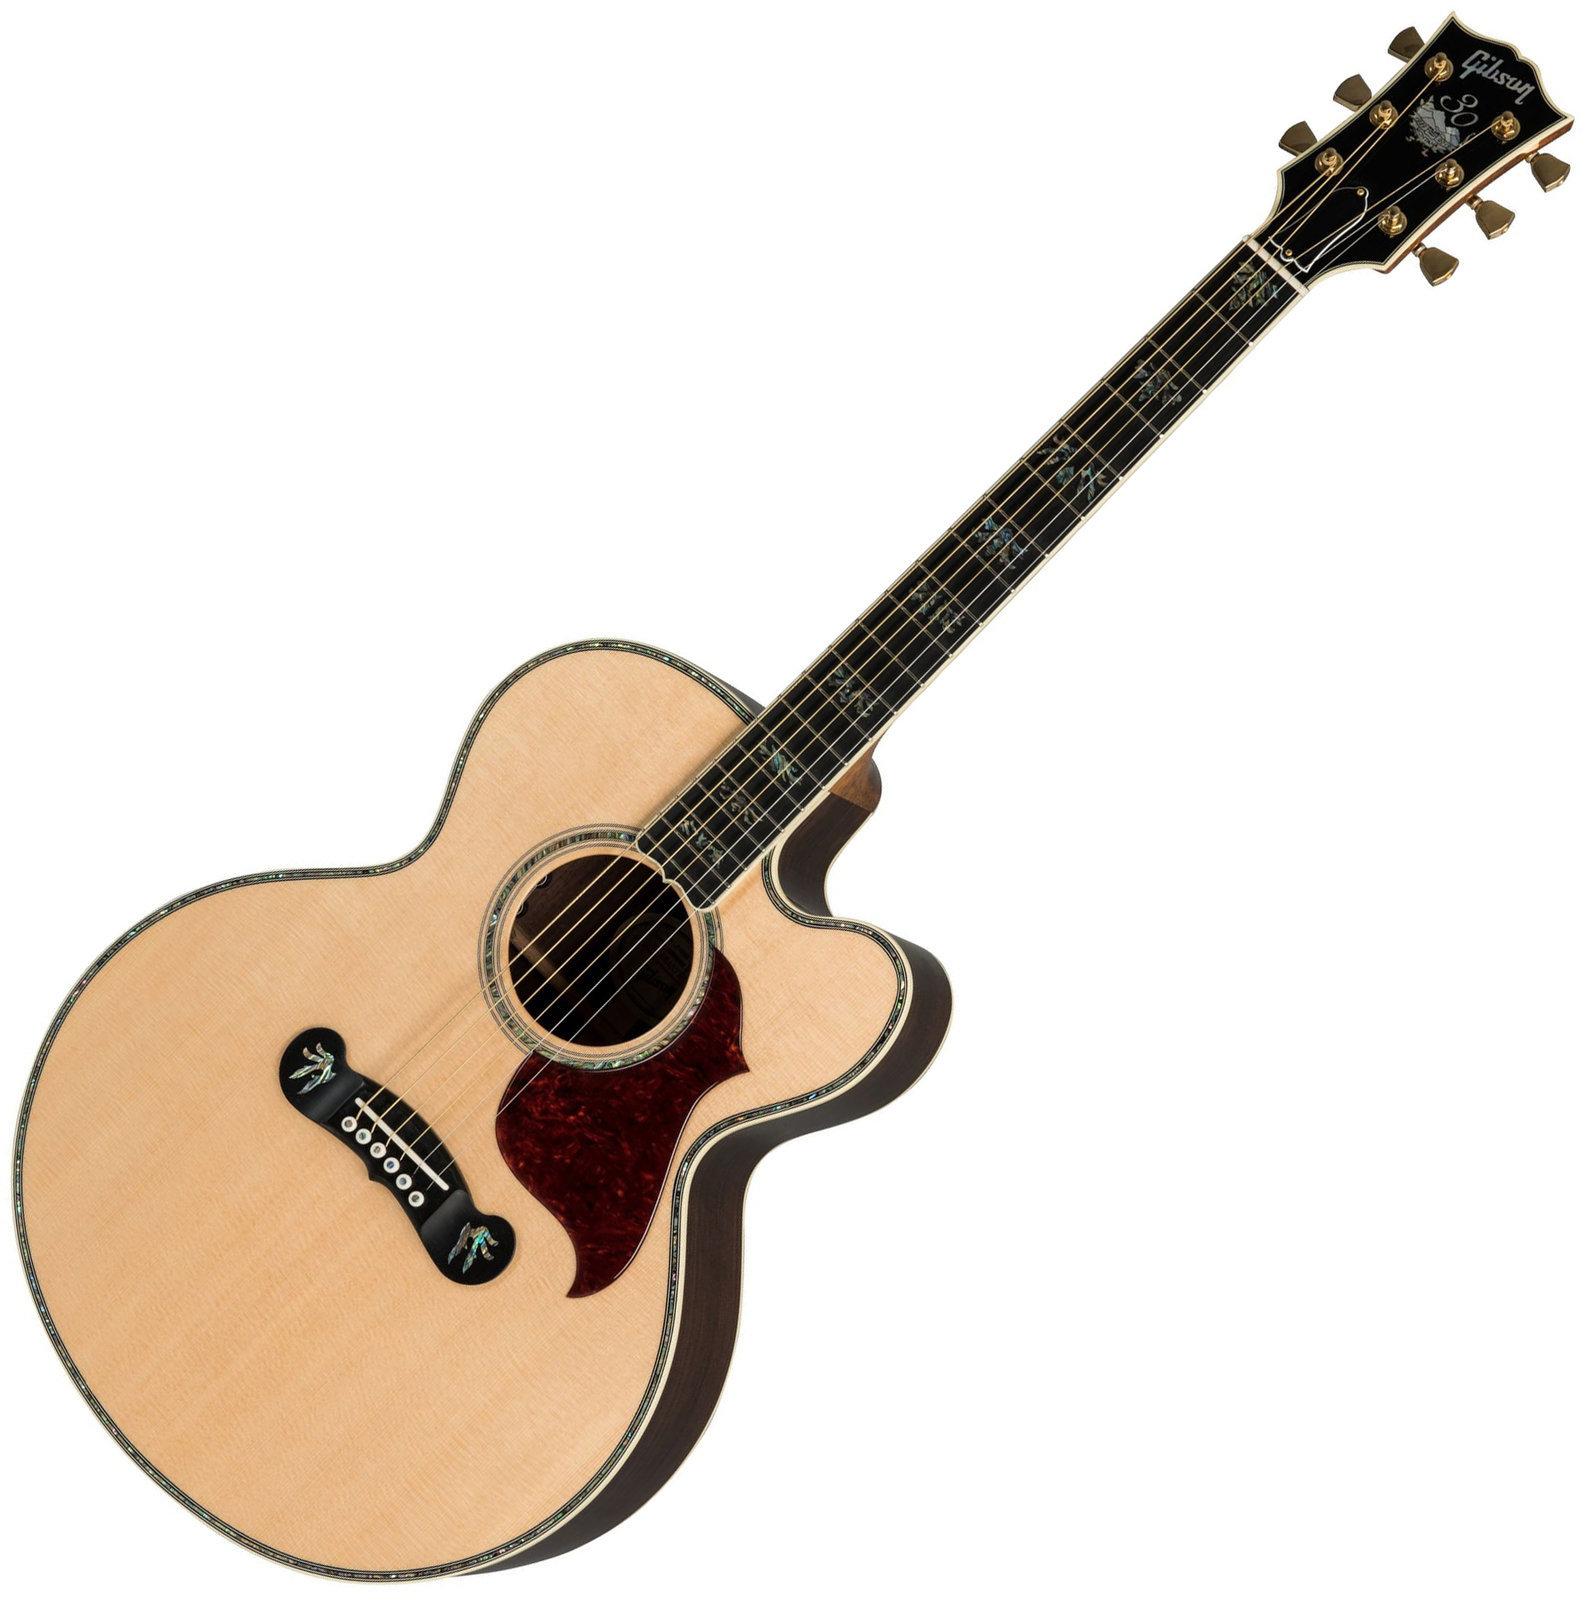 Ηλεκτροακουστική Κιθάρα Jumbo Gibson J-2000 2019 Antique Natural